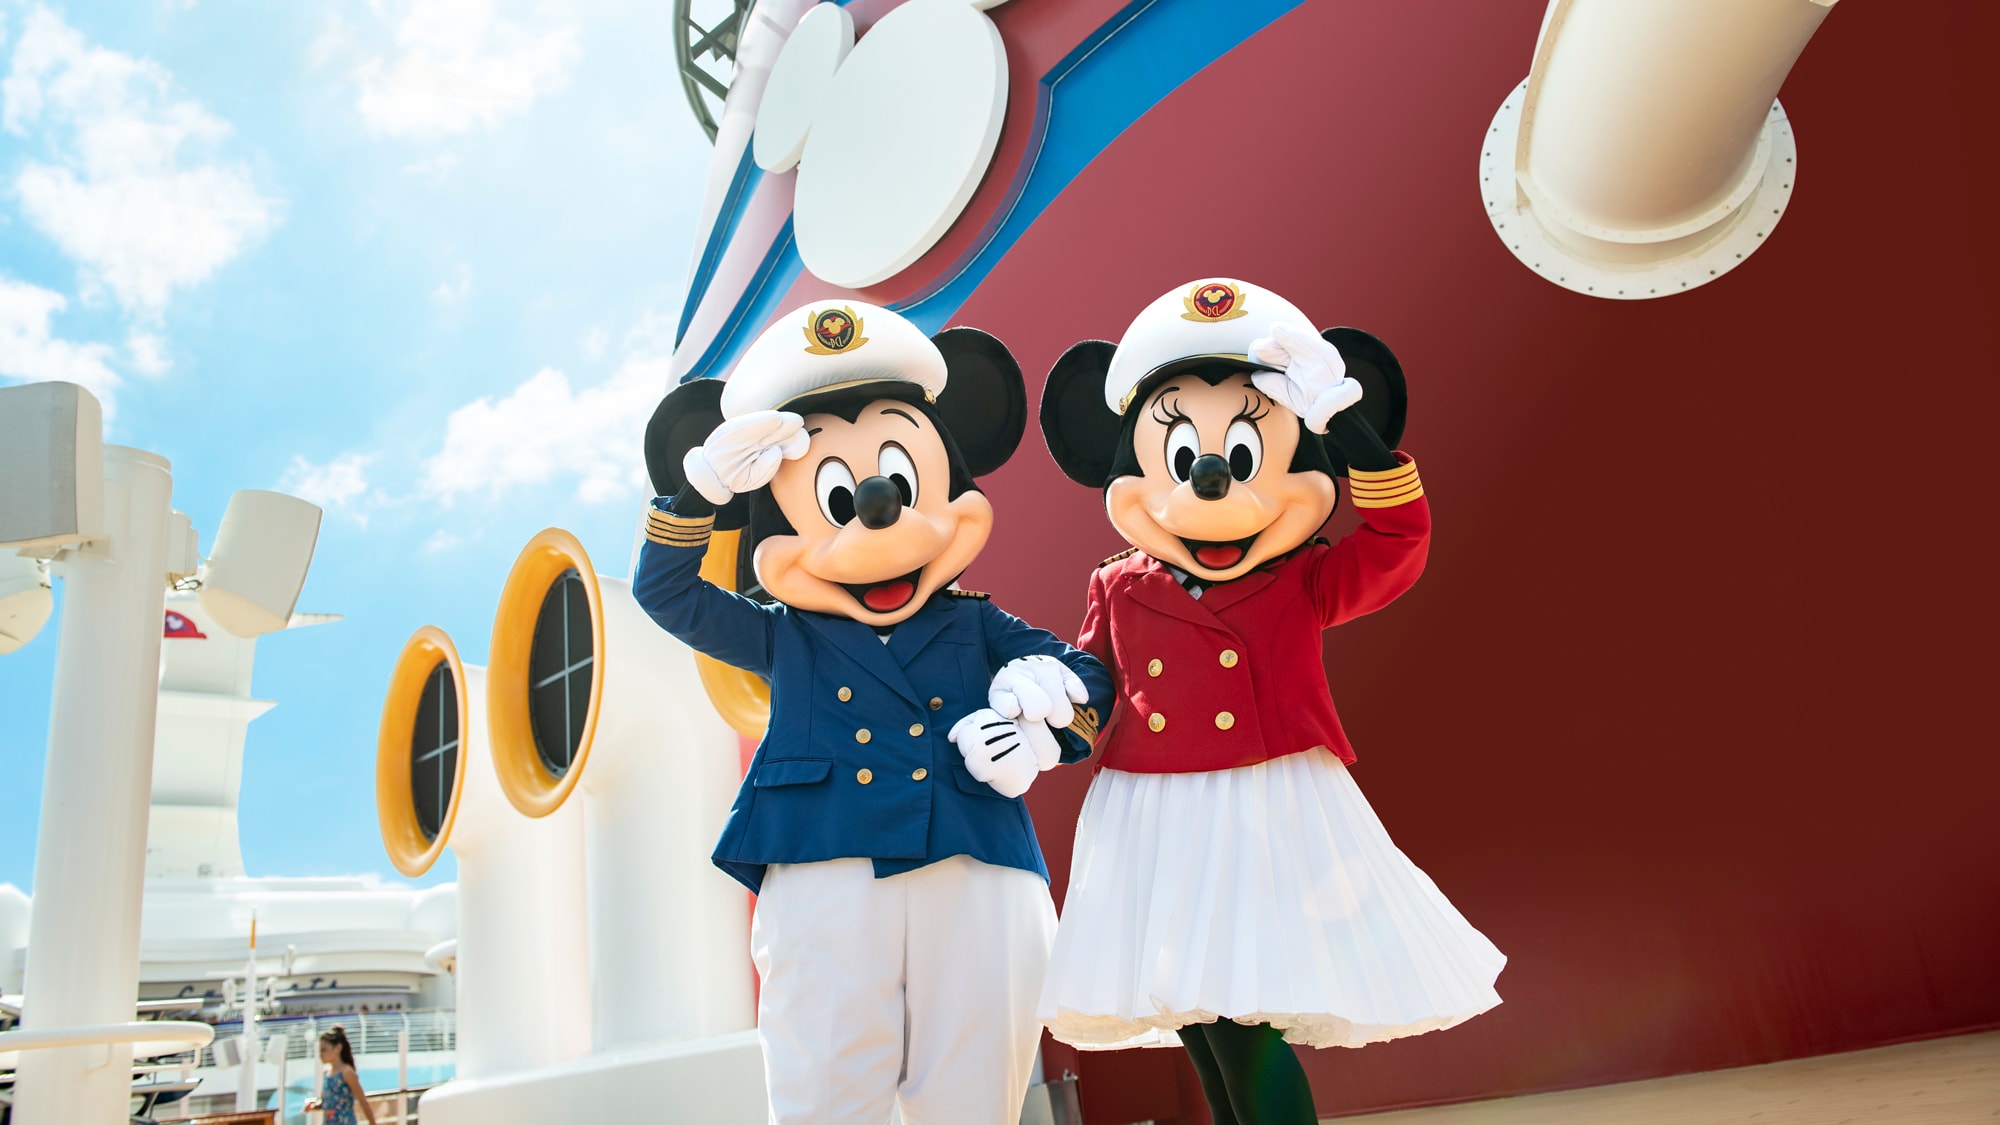 Alt テキスト：ディズニー・クルーズラインの客船のデッキに立ち、腕を取り合って挨拶するミッキー船長とミニー船長